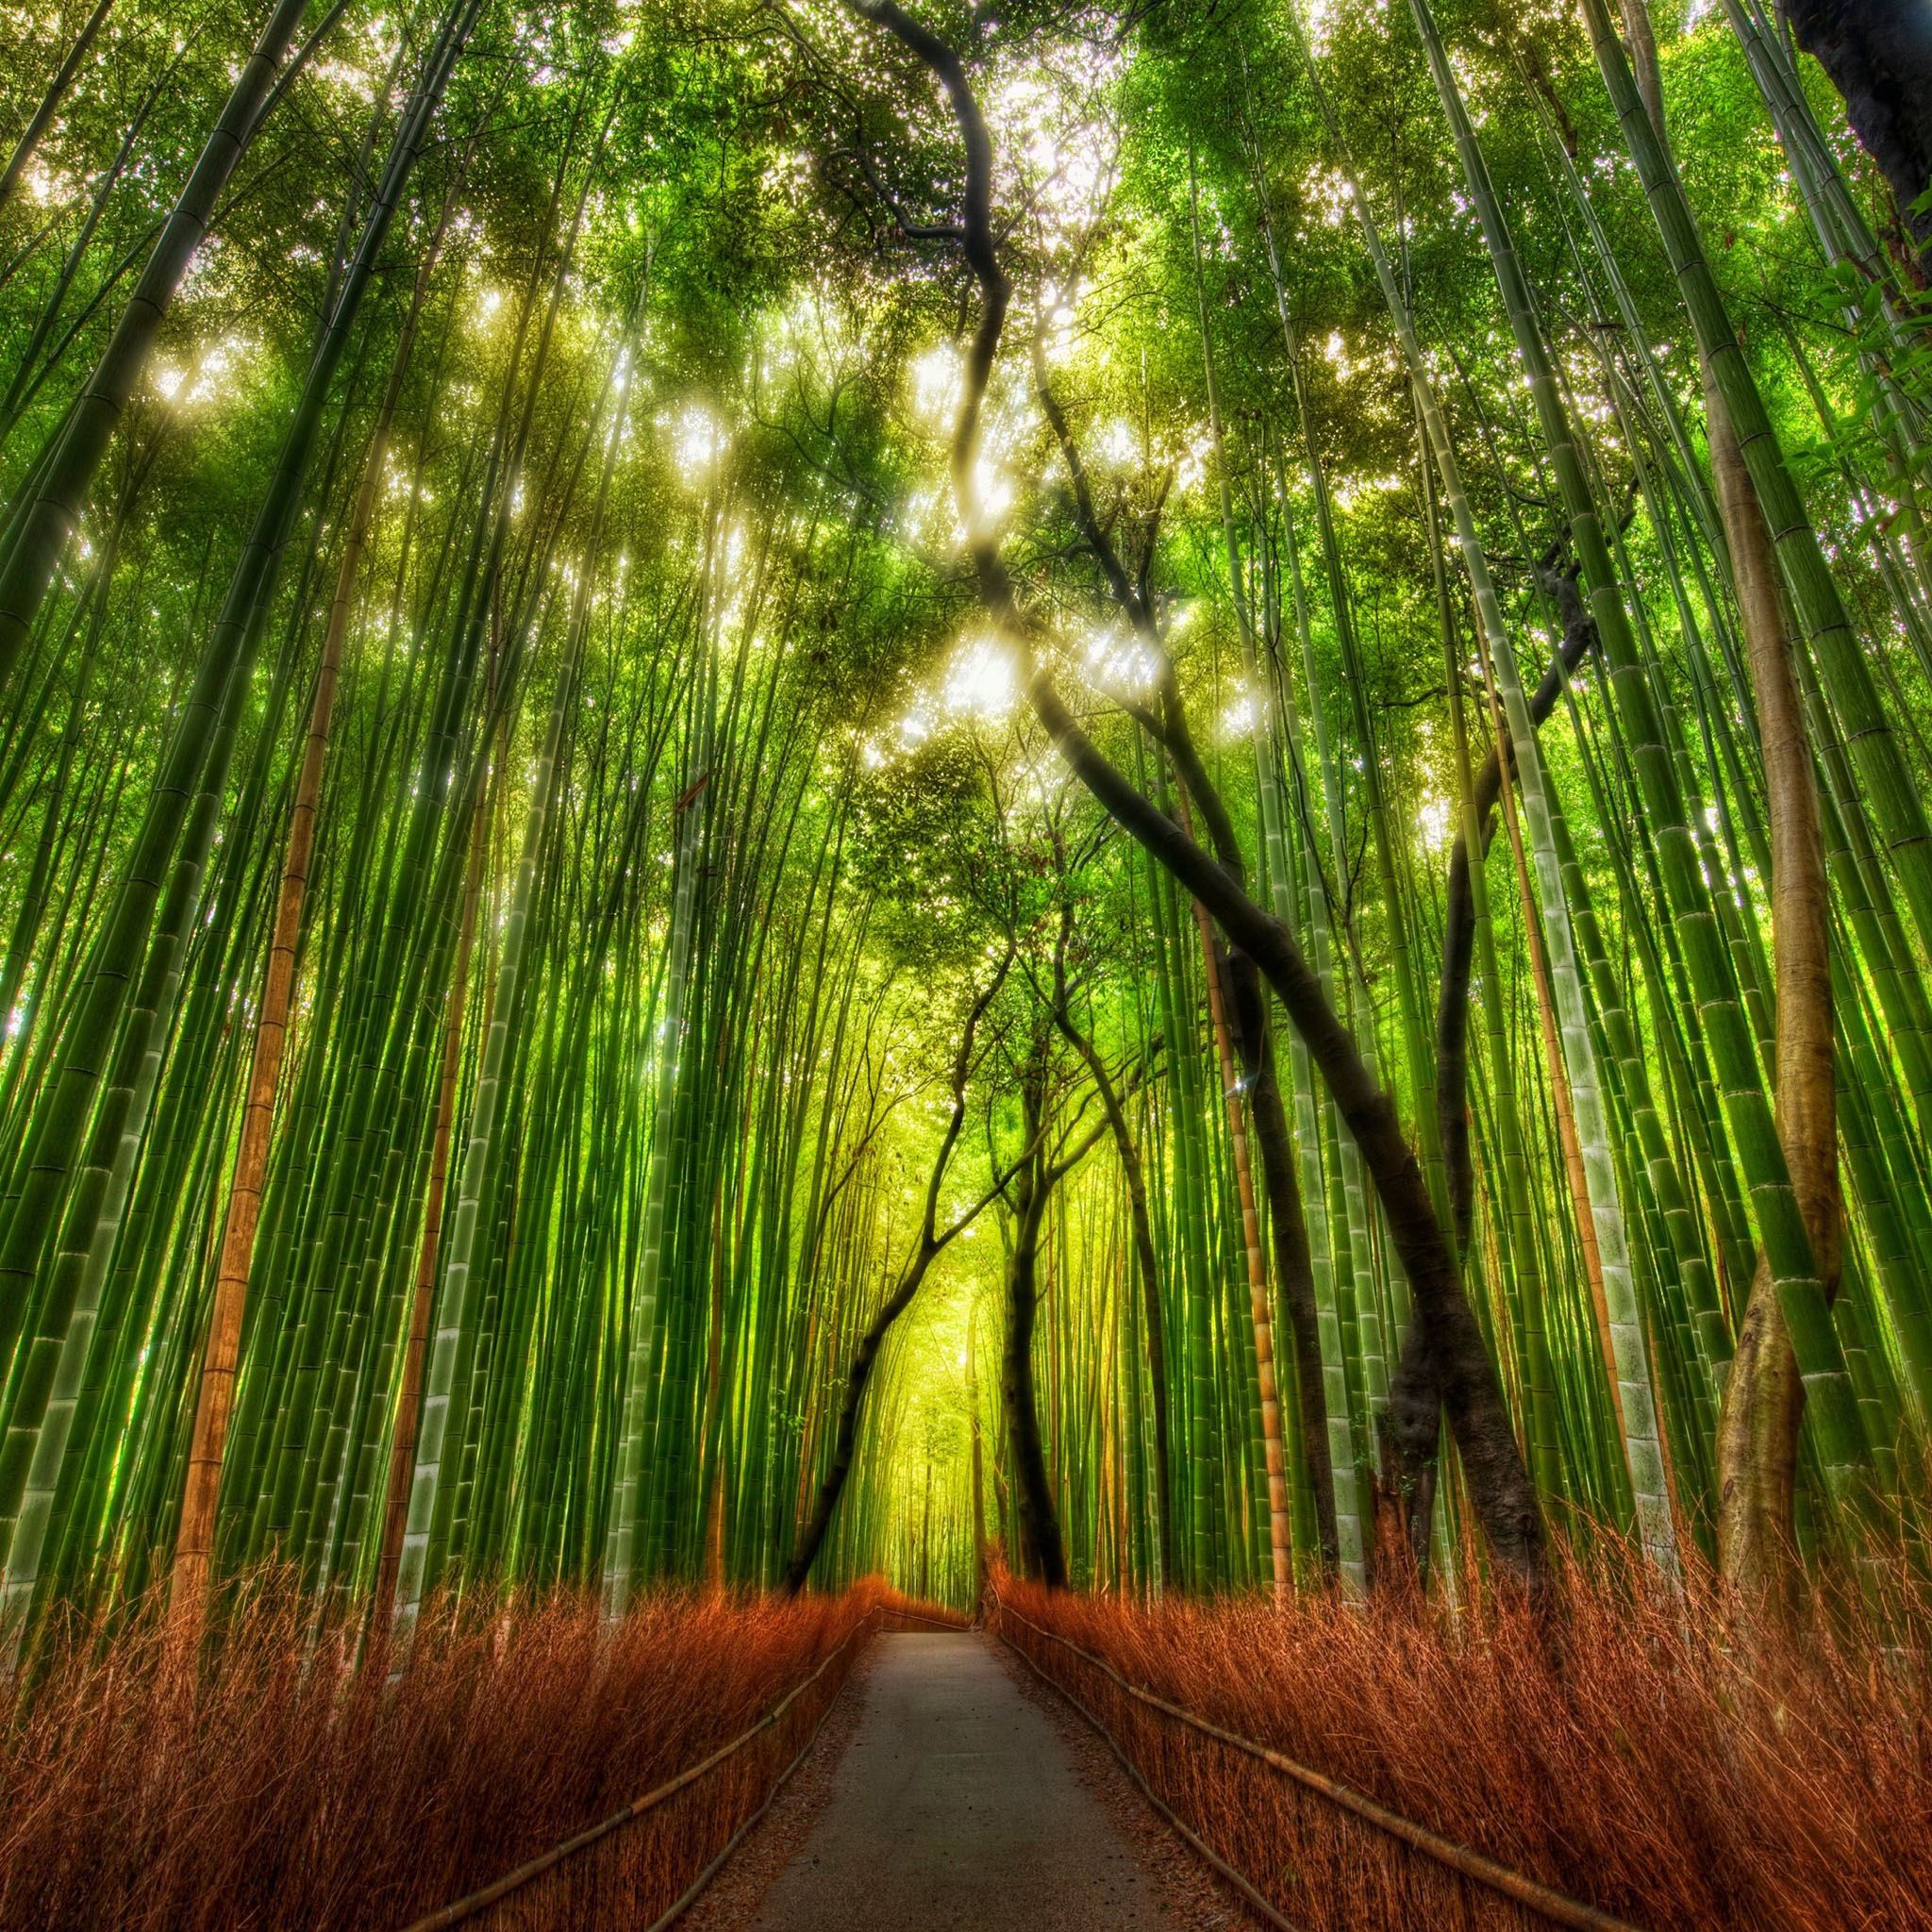 Nature Bamboo Woodland Road iPad Air wallpaper 